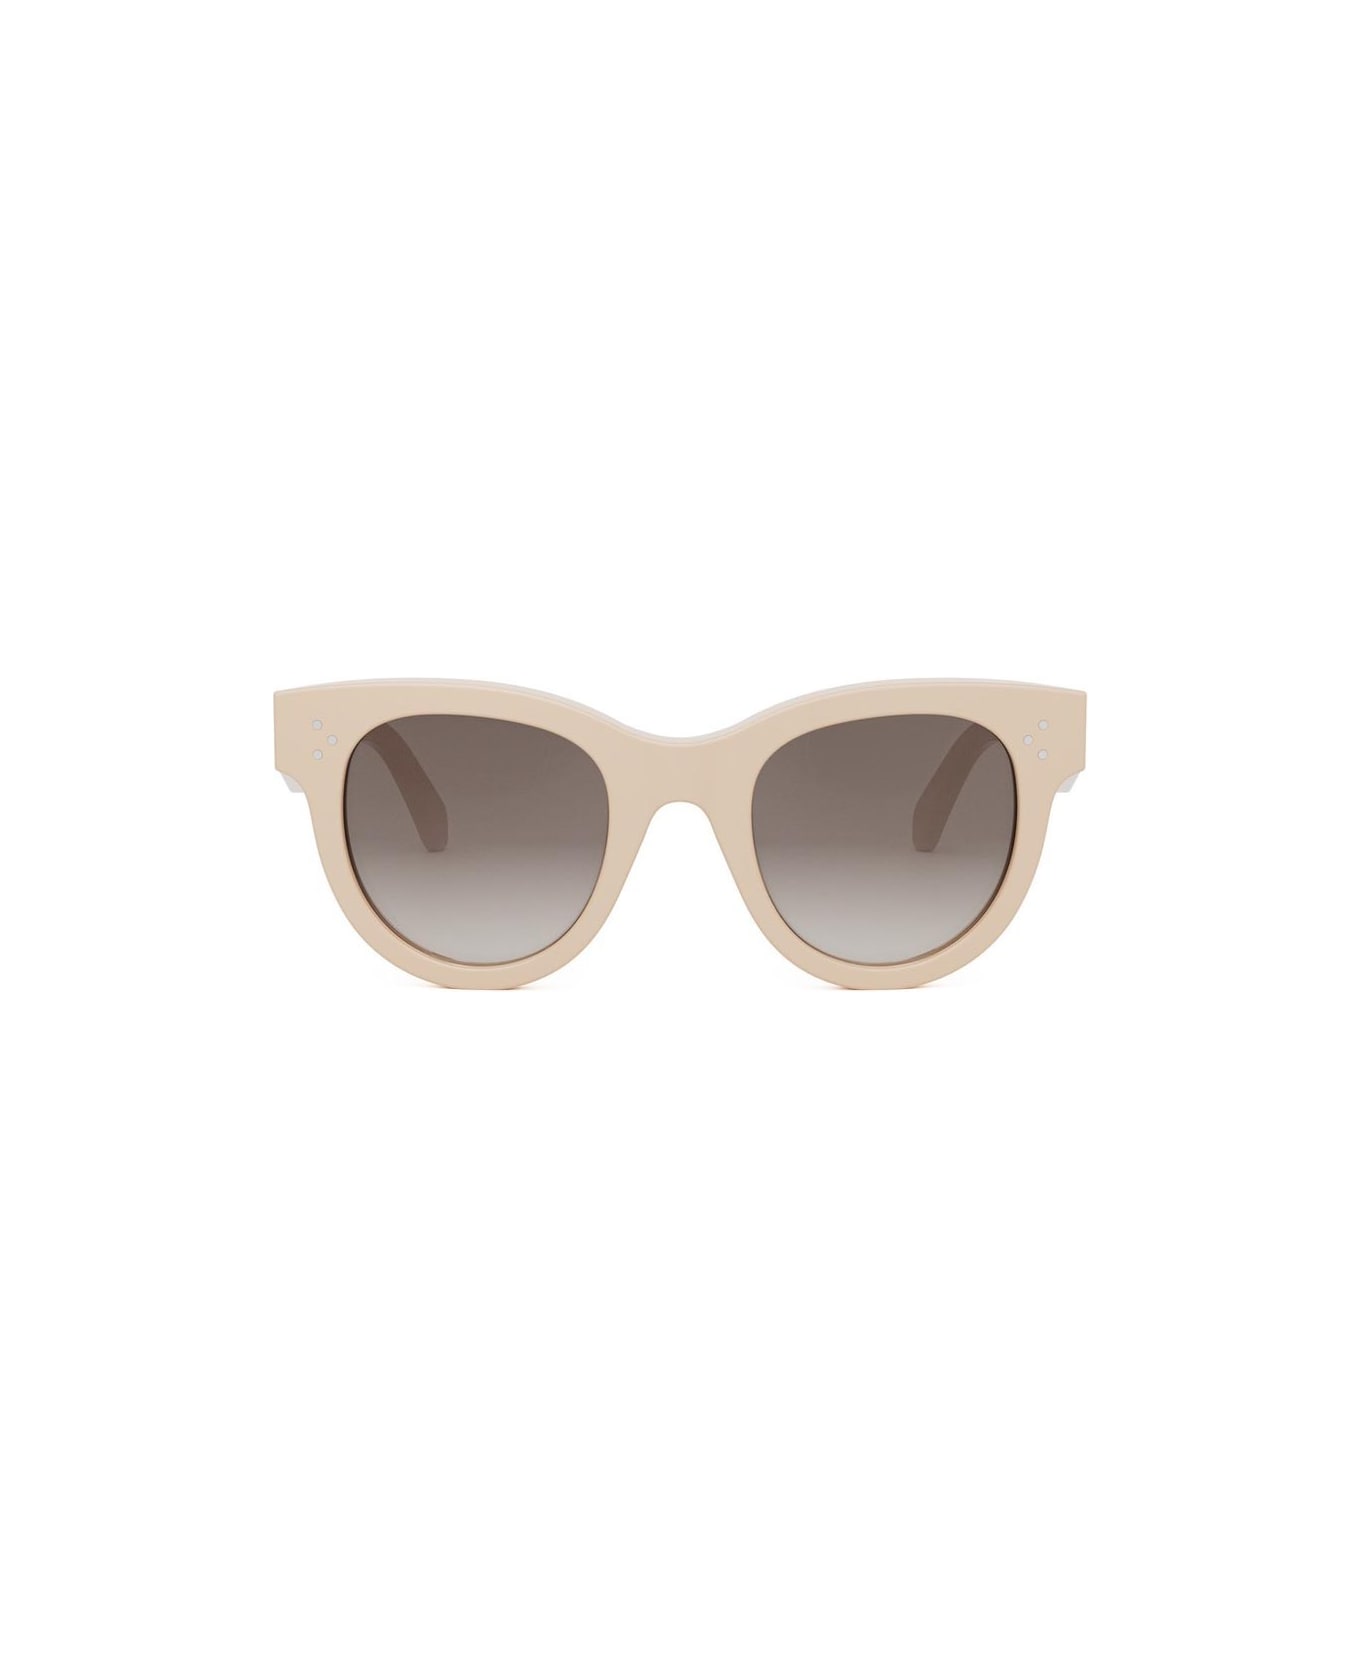 Celine Sunglasses - Cipria/Marrone sfumato サングラス